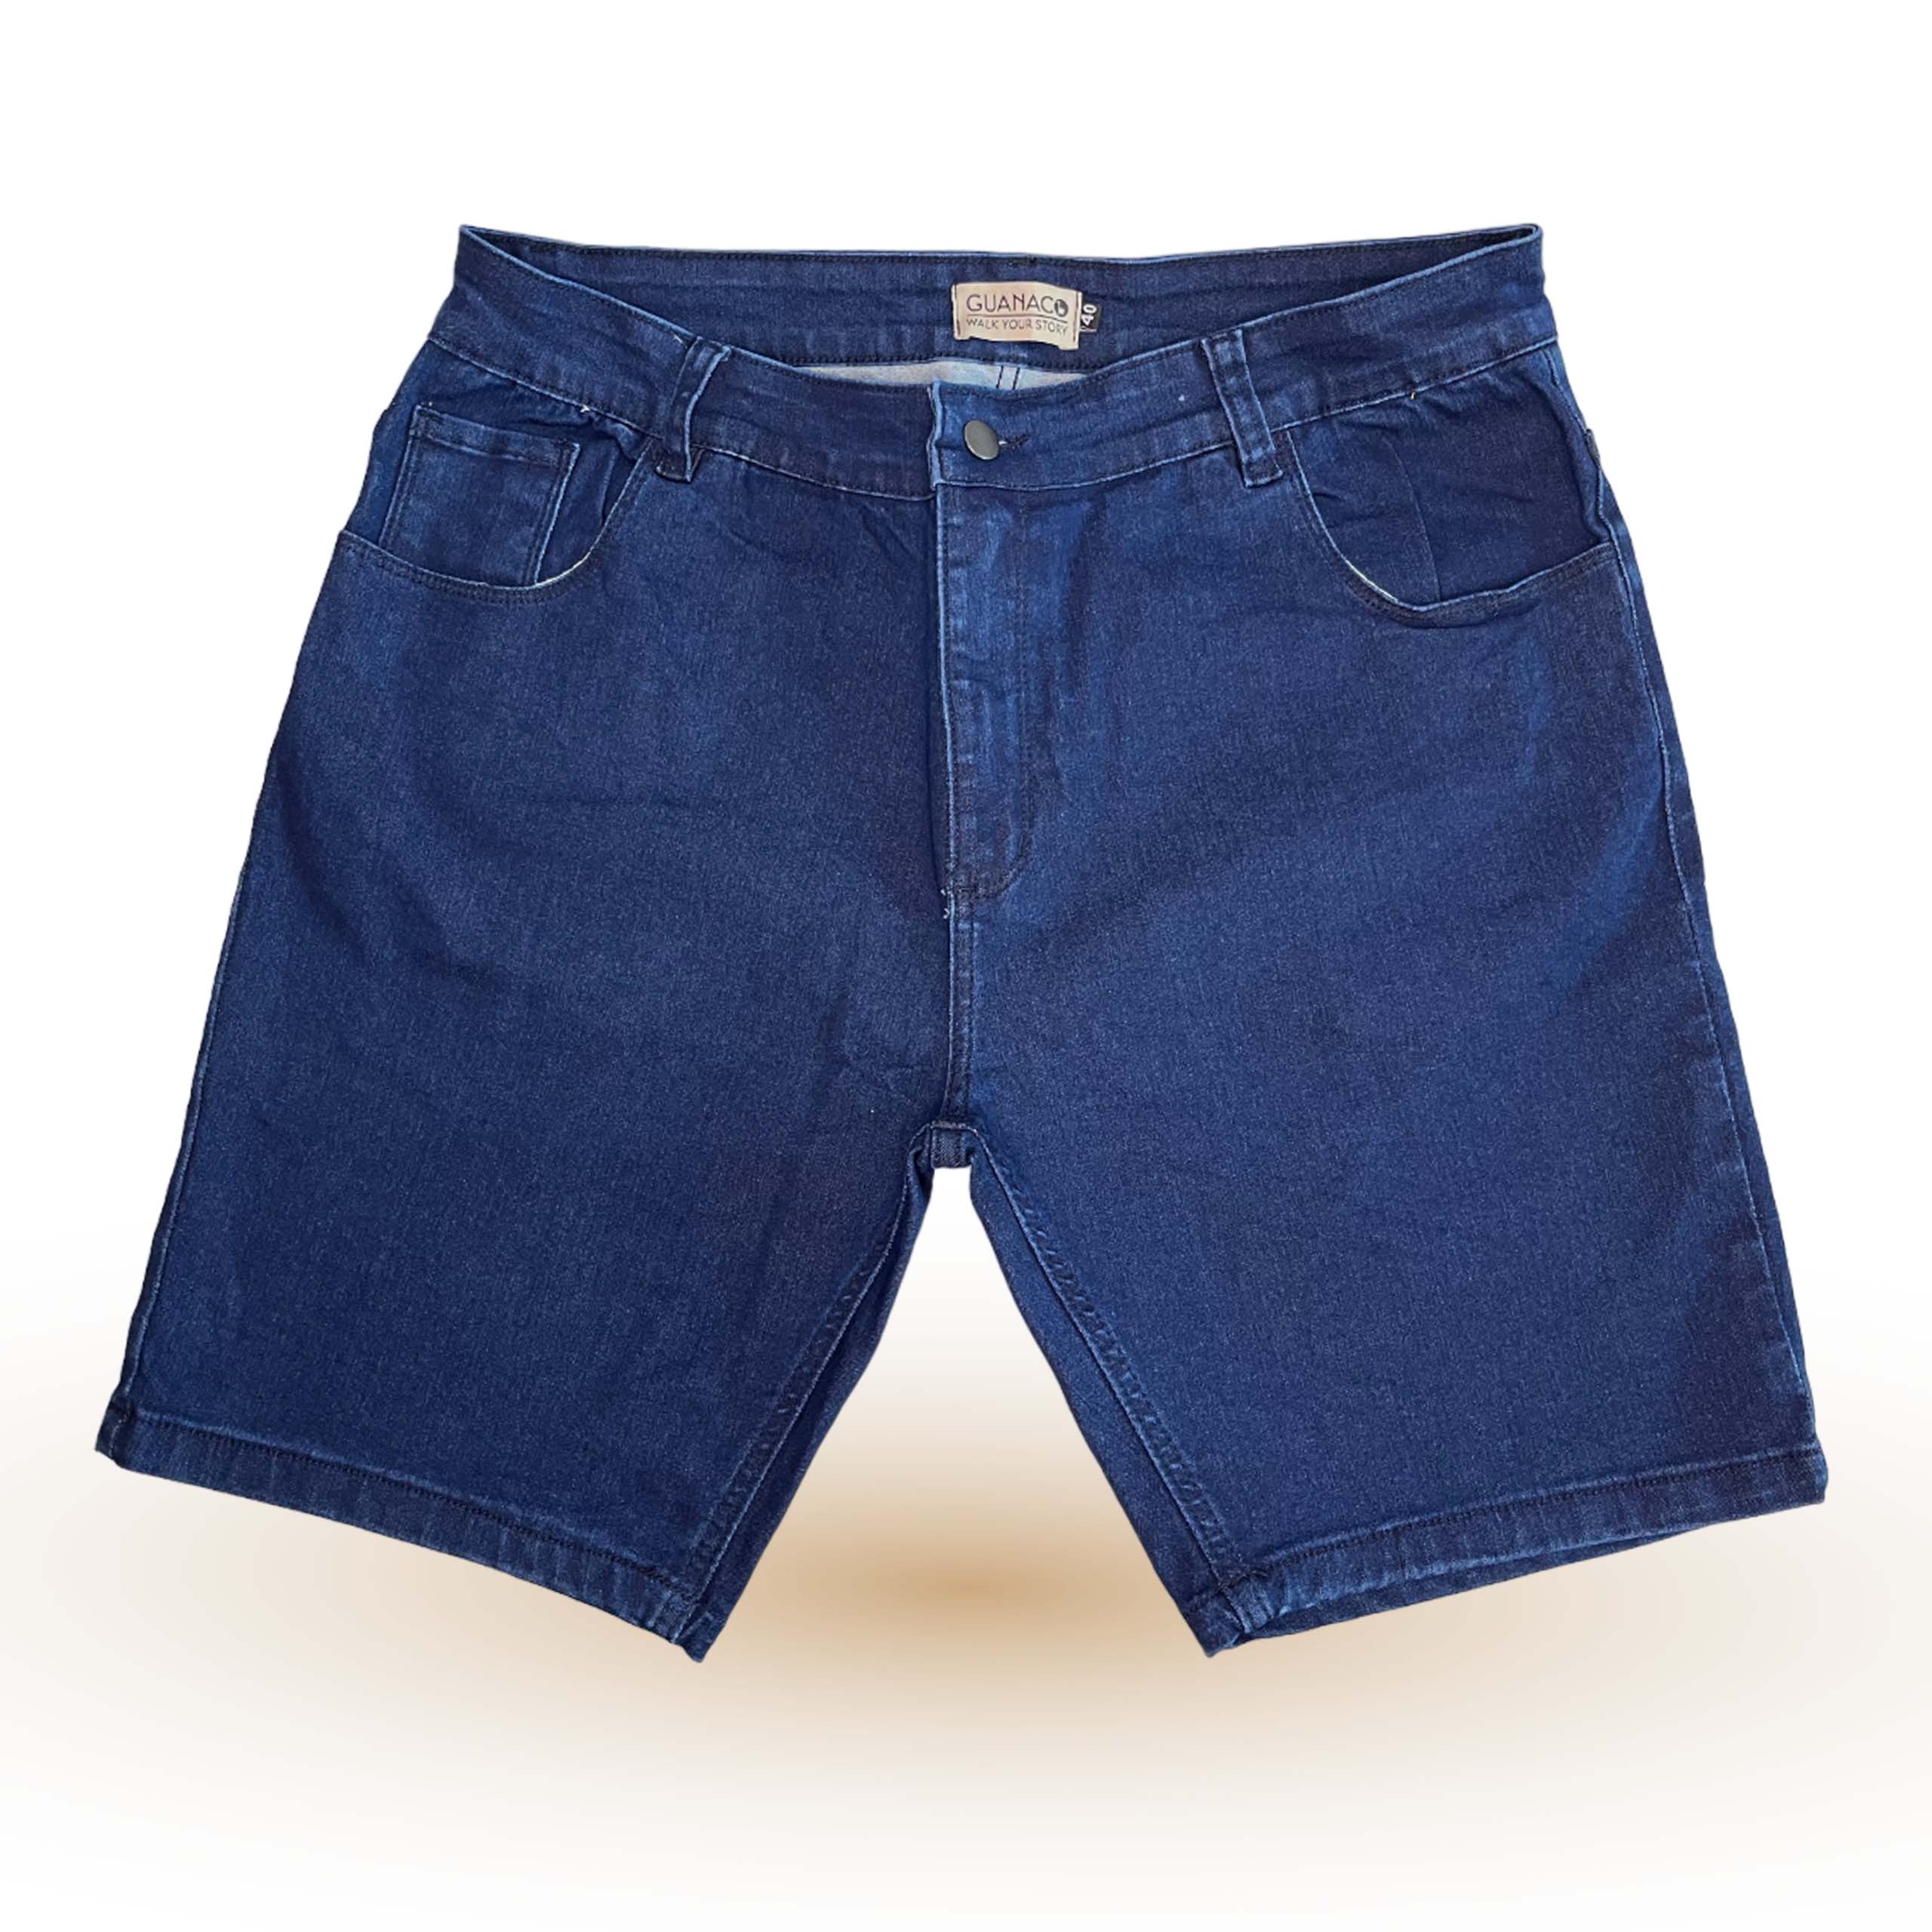 Bermuda corte americano confeccionada en jean elastizado con bolsillos delanteros redondos y bolsillos traseros clásicos.